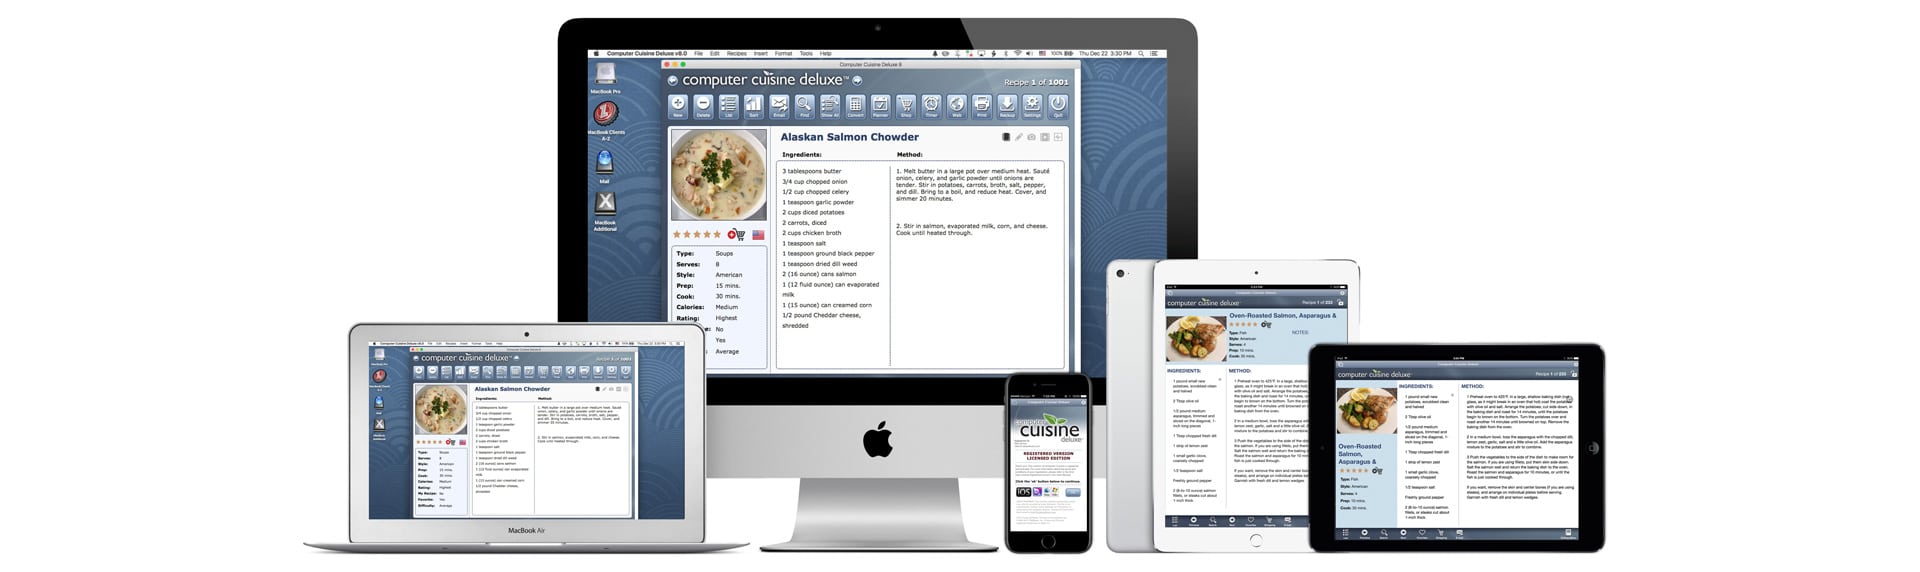 download computer cuisine deluxe 7.0.app mac